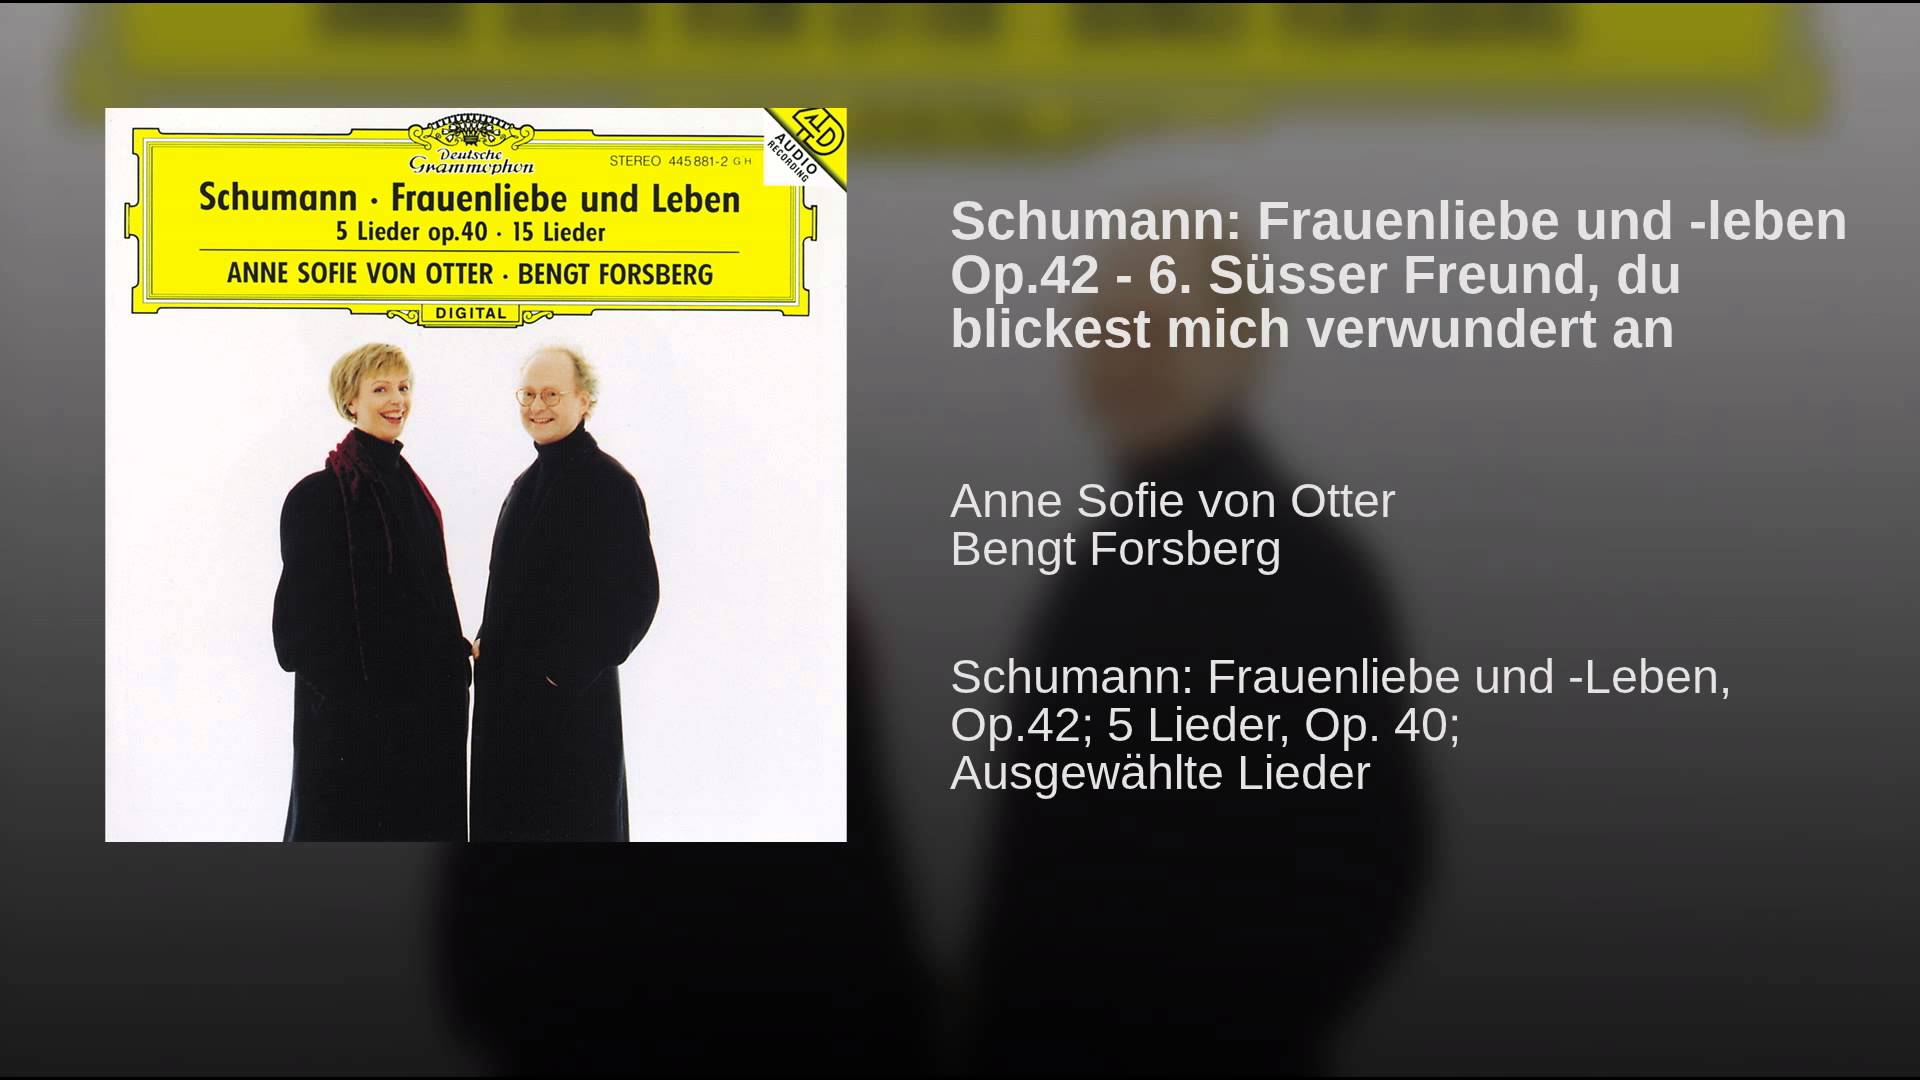 Robert Schumann: Süsser Freund